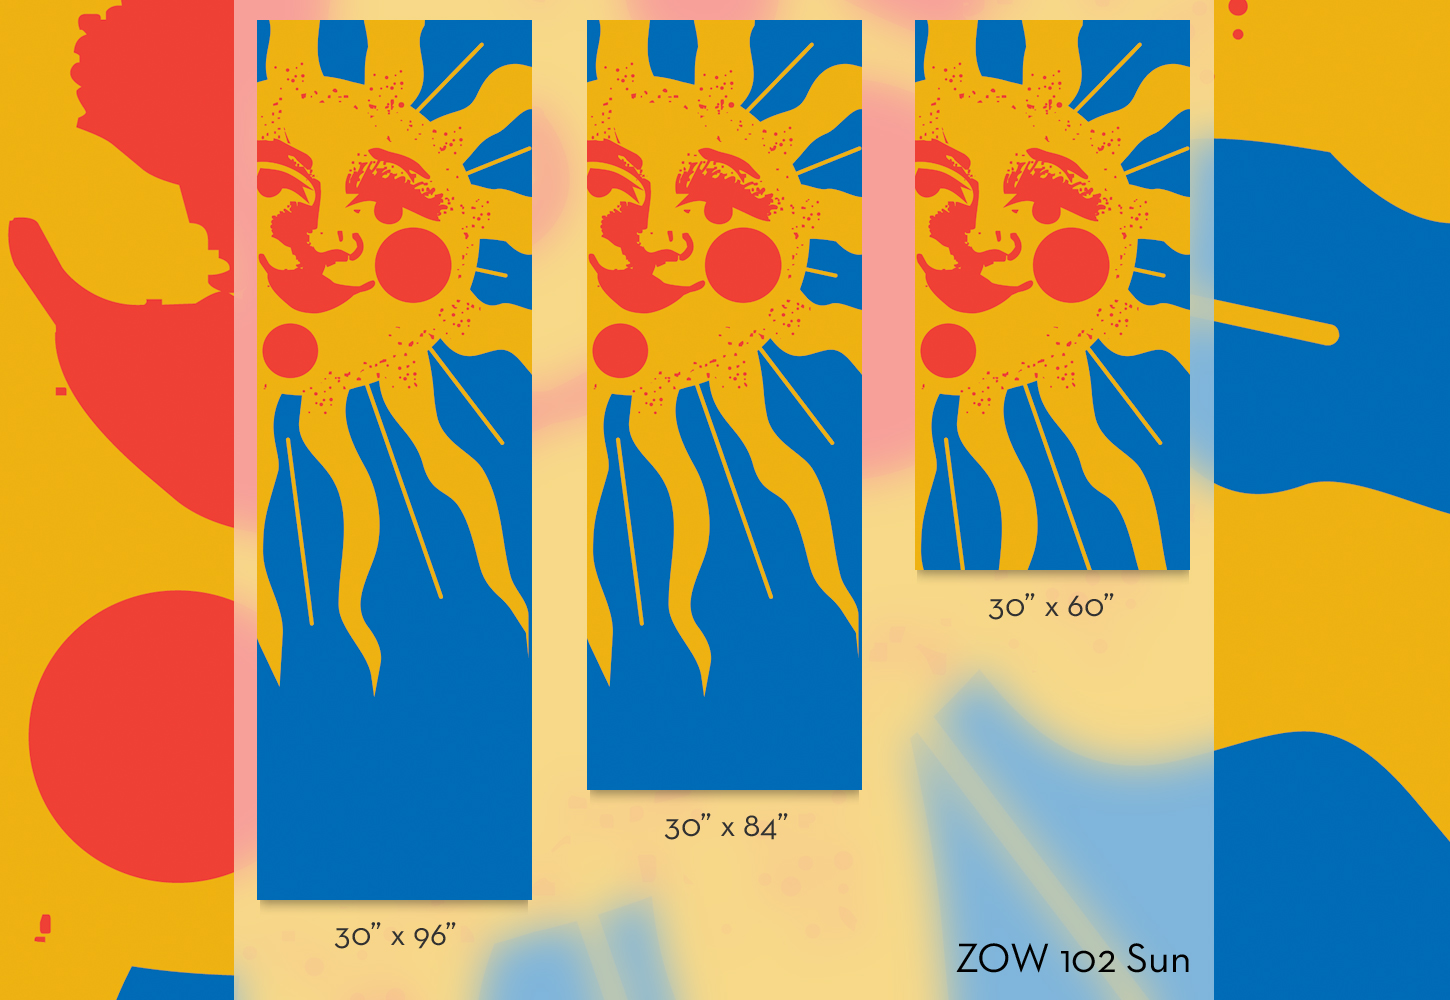 ZOW 102 Sun